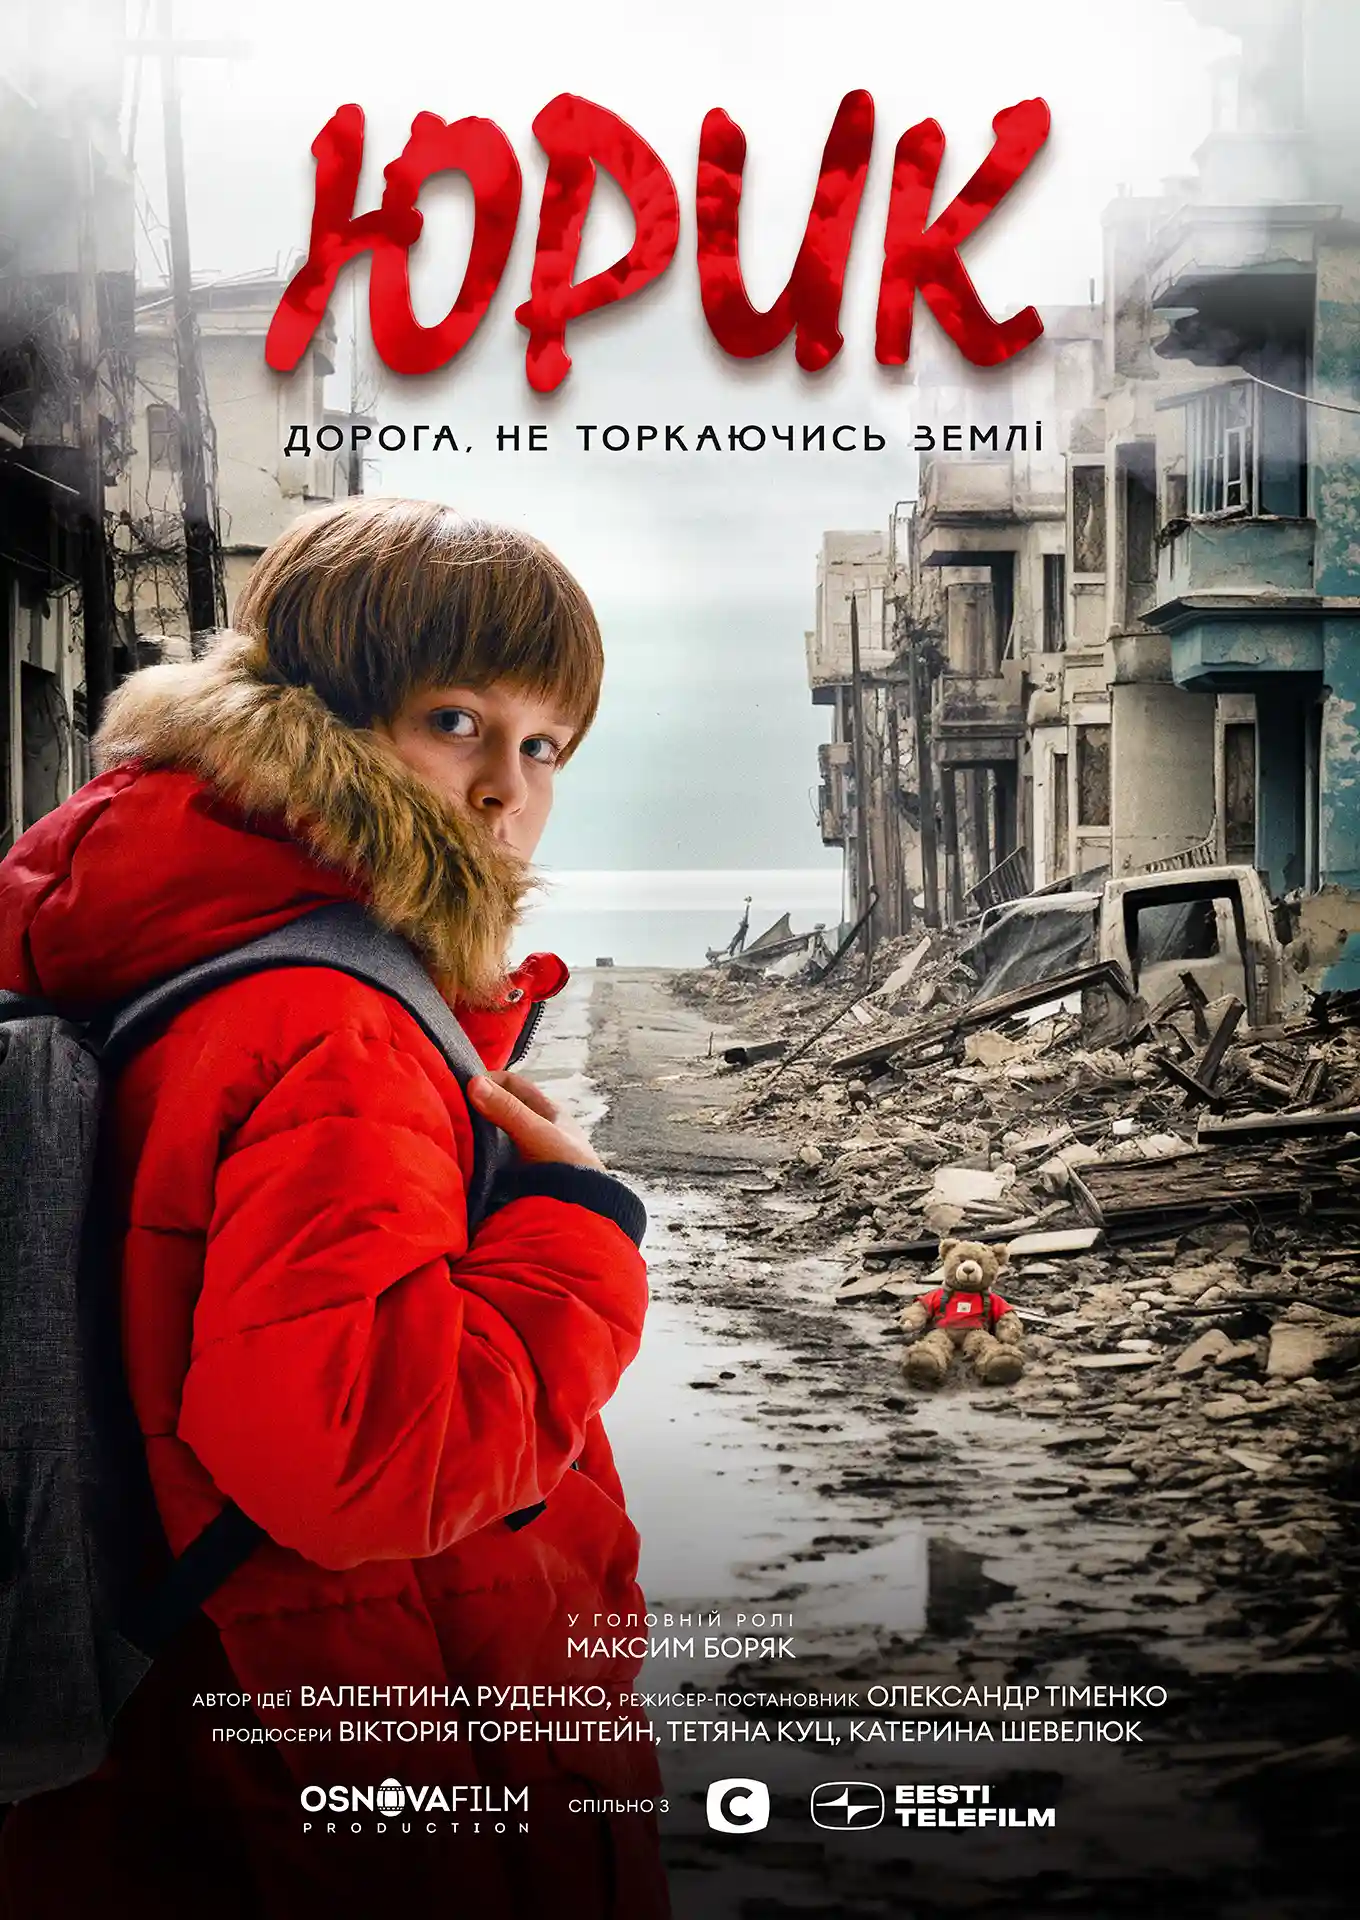 Постер для повнометражного фільму «Юрик» представляє візуальне зображення молодого хлопчика Юри, який стоїть серед руїн, з Азовським морем на задньому плані.